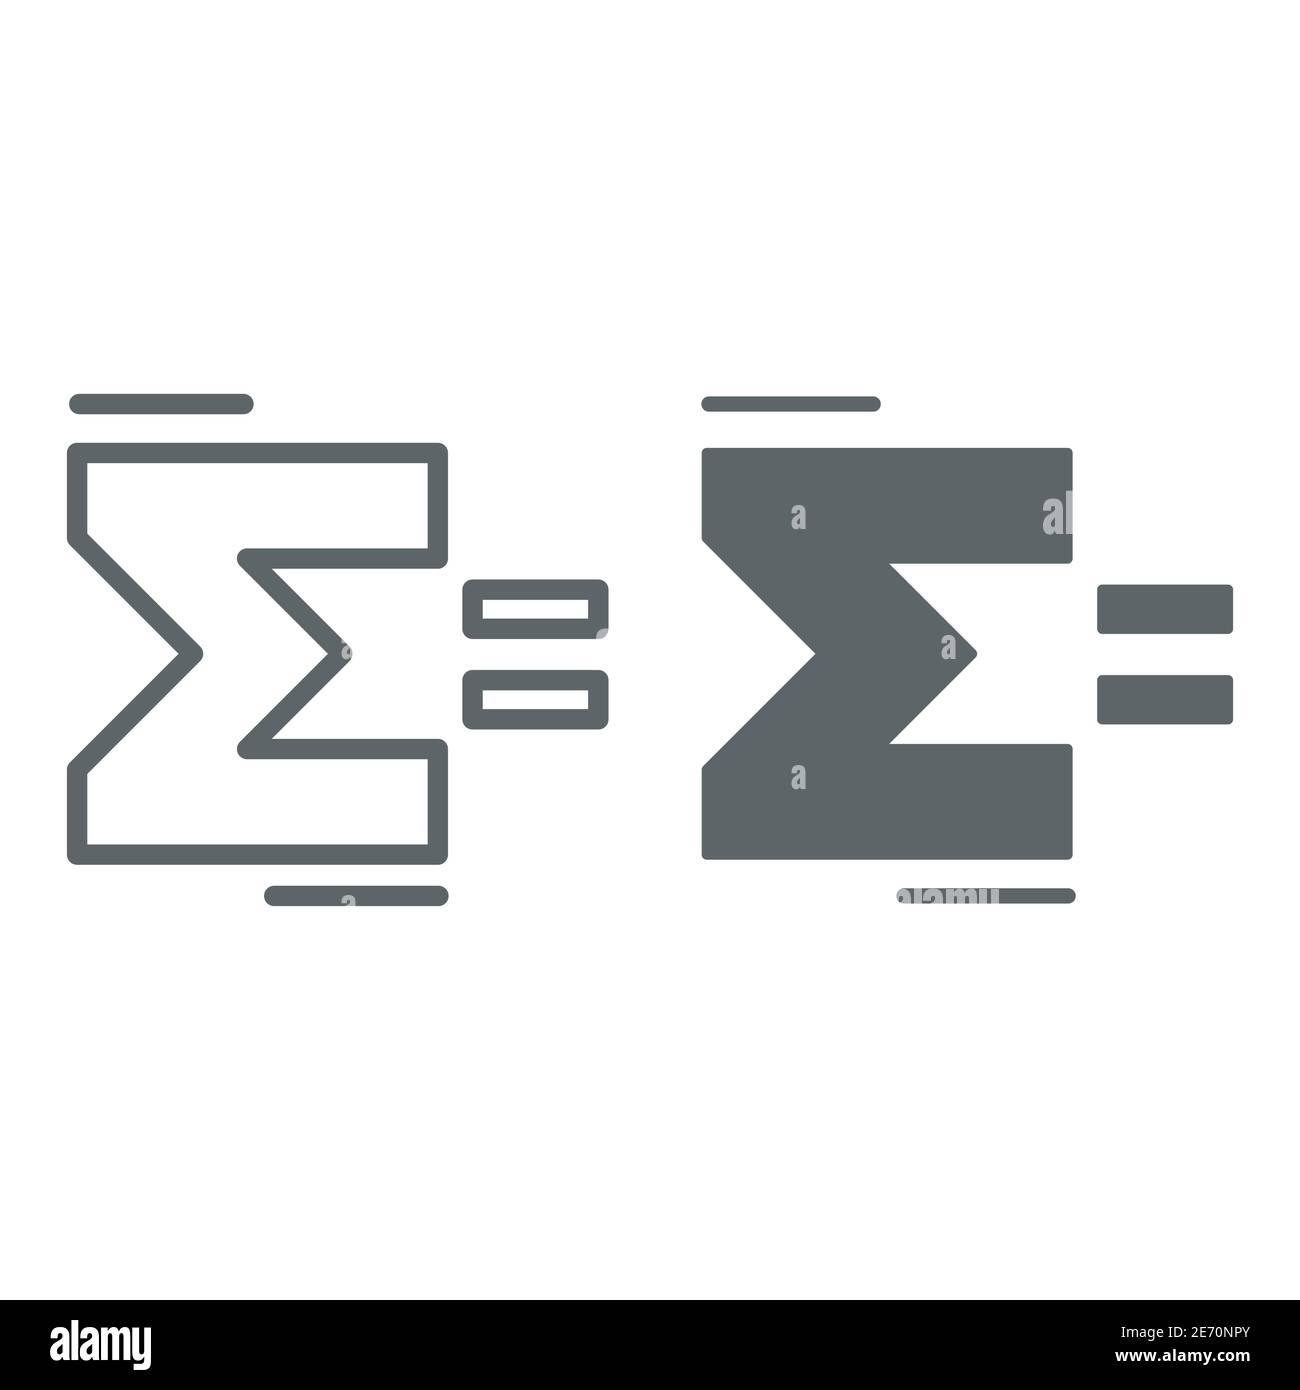 Linea del segno Sigma e icona solida, concetto di matematica, segno di somma su sfondo bianco, icona della lettera greca Sigma in stile outline per il concetto mobile Illustrazione Vettoriale